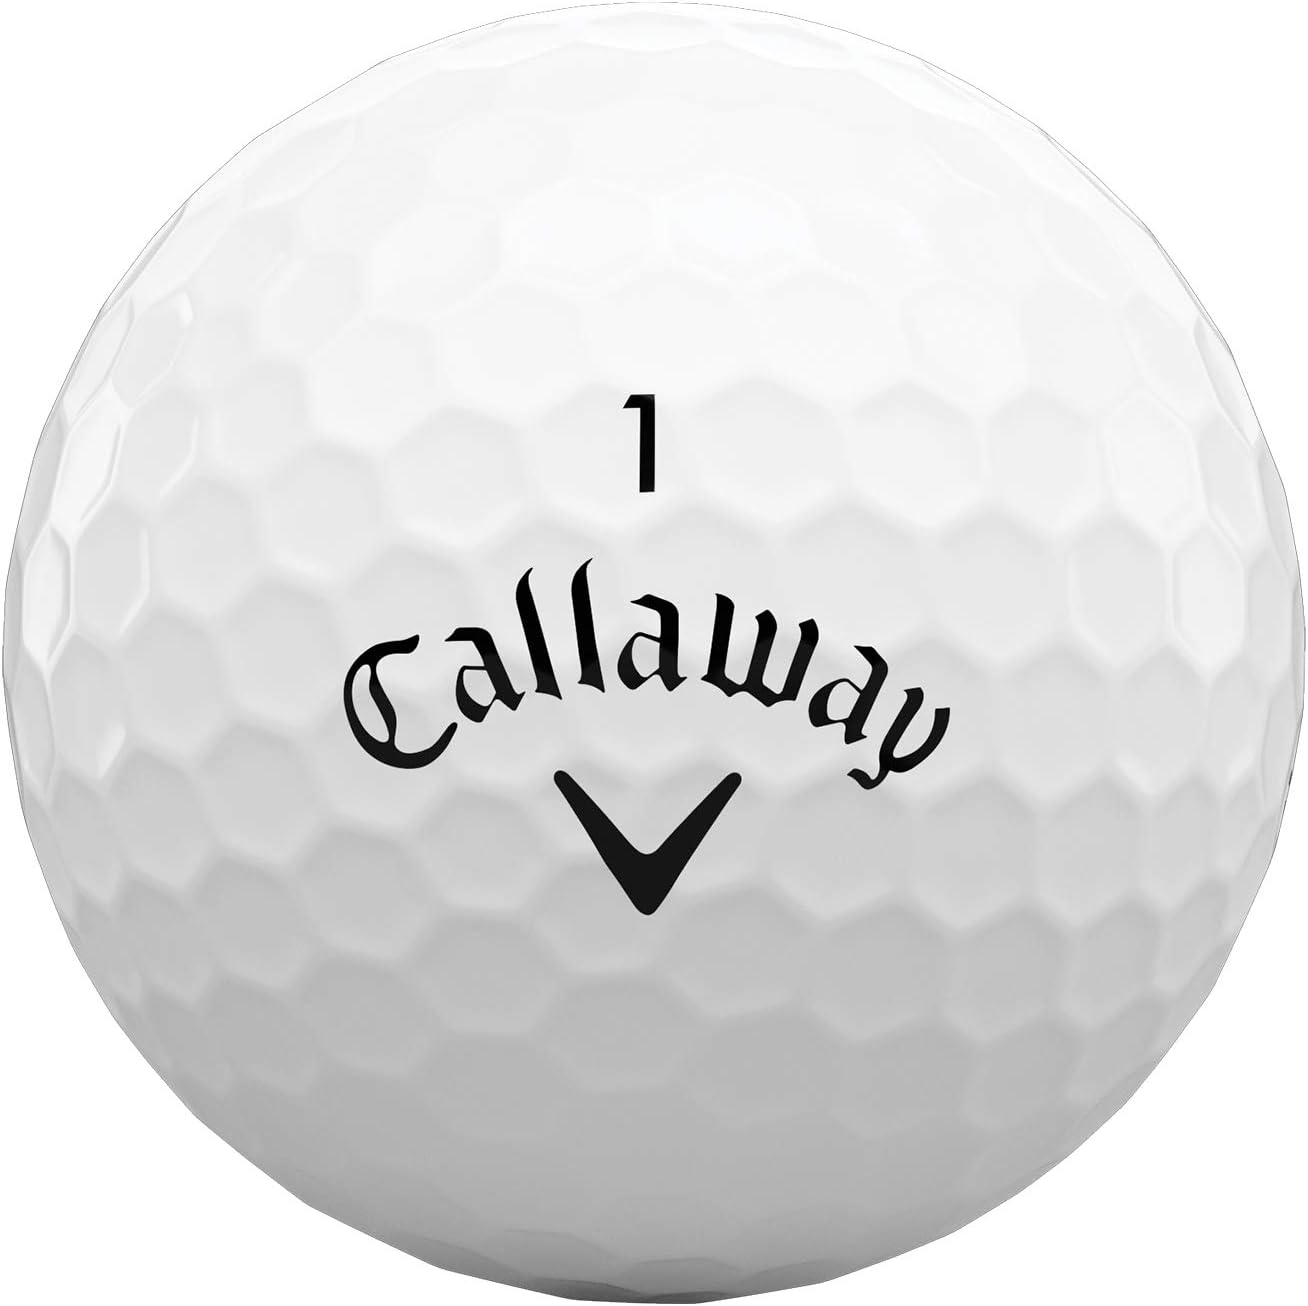 Callaway Golf Warbird Golf Balls 2021